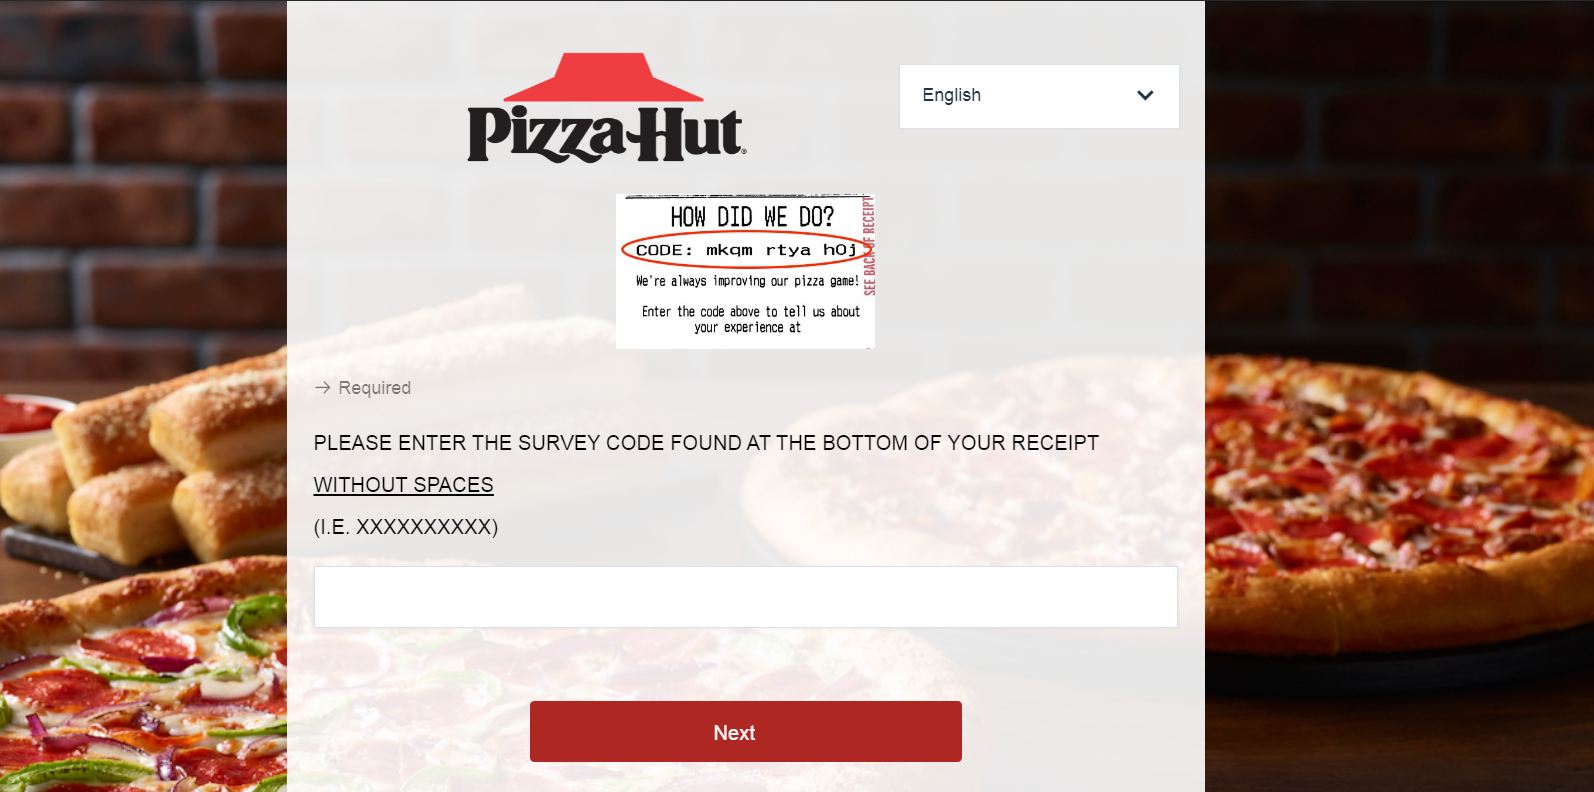 Tellpizzahut.com - Official Pizza Hut Survey to Get Instant $10 Off